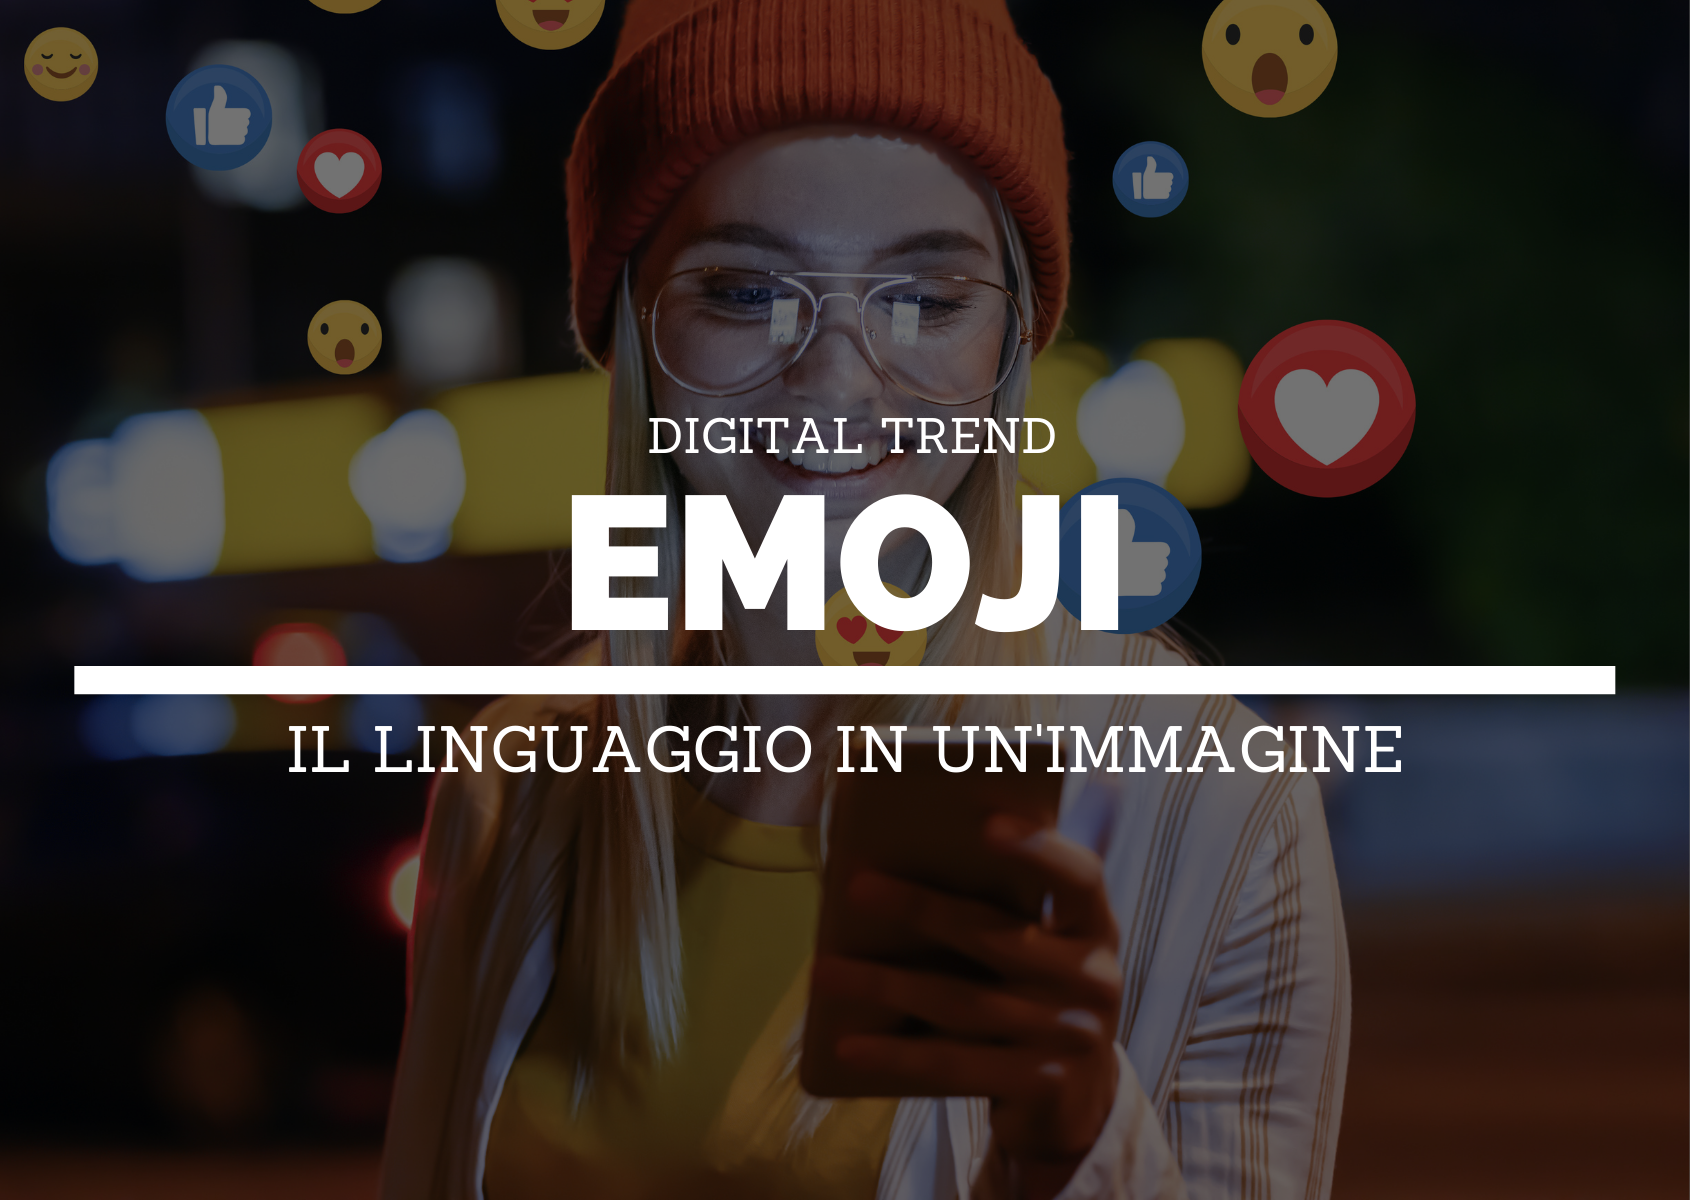 Emoji: il linguaggio in un'immagine